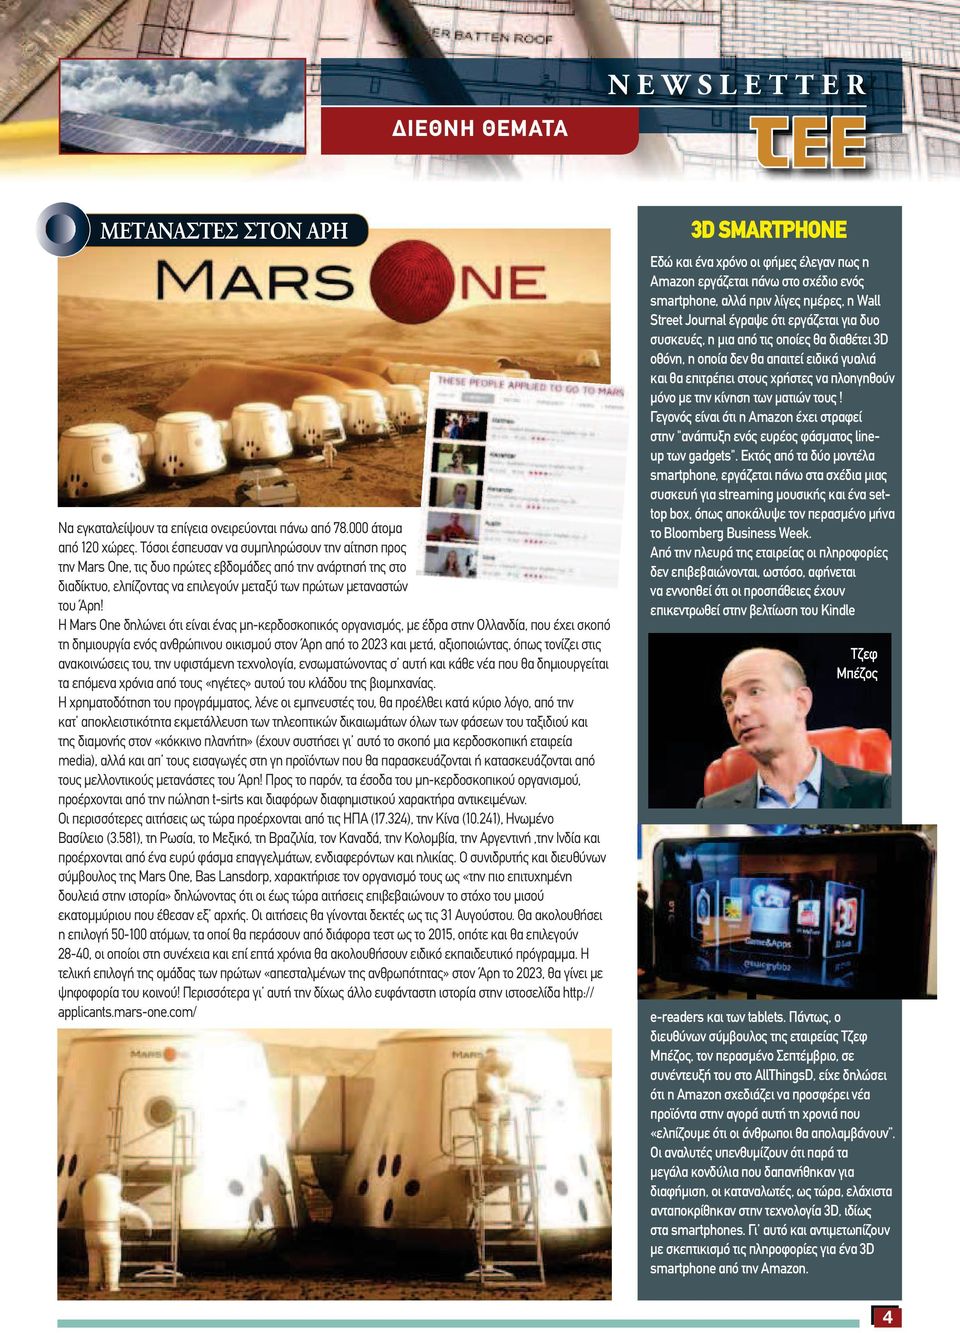 Η Mars One δηλώνει ότι είναι ένας µη-κερδοσκοπικός οργανισµός, µε έδρα στην Ολλανδία, που έχει σκοπό τη δηµιουργία ενός ανθρώπινου οικισµού στον Άρη από το 2023 και µετά, αξιοποιώντας, όπως τονίζει